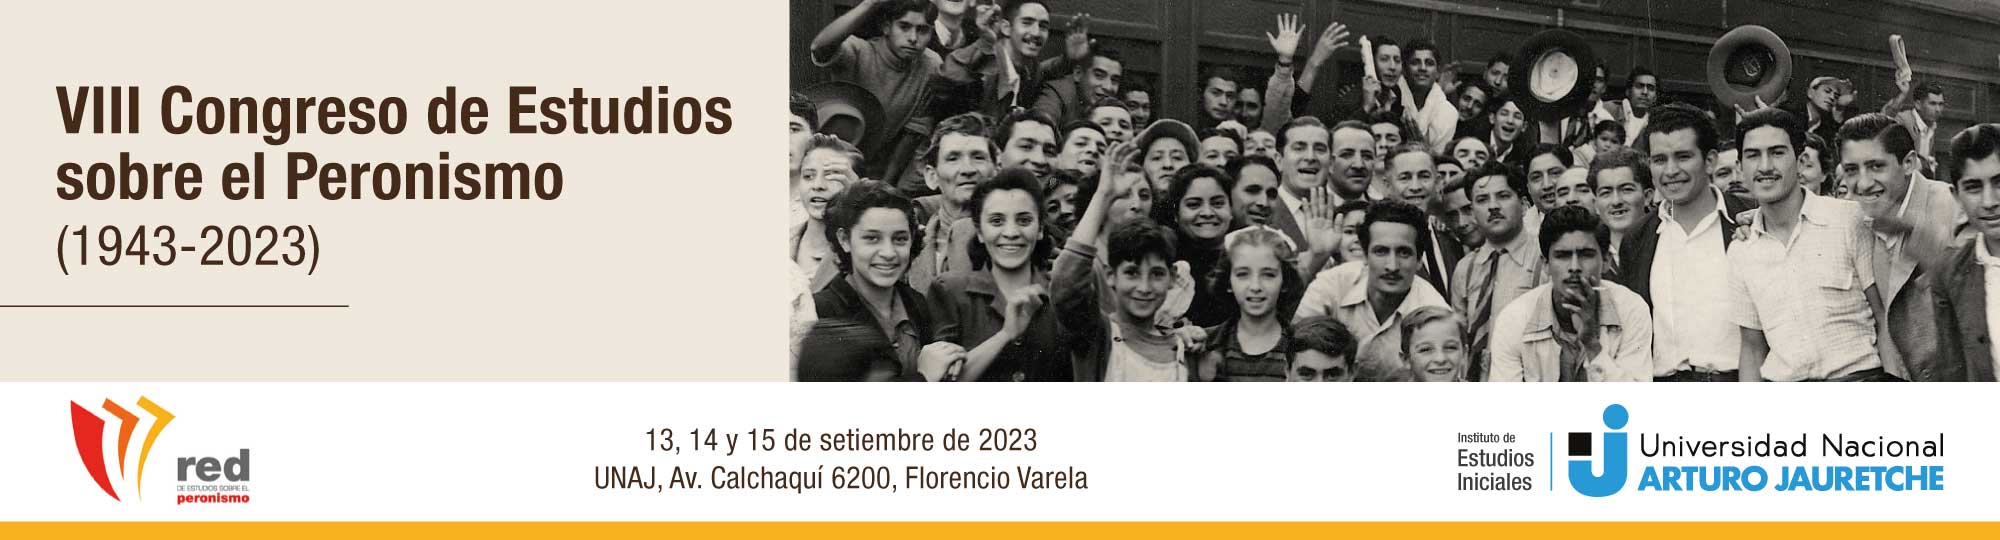 VIII Congreso de Estudios sobre el Peronismo (1943-2023)